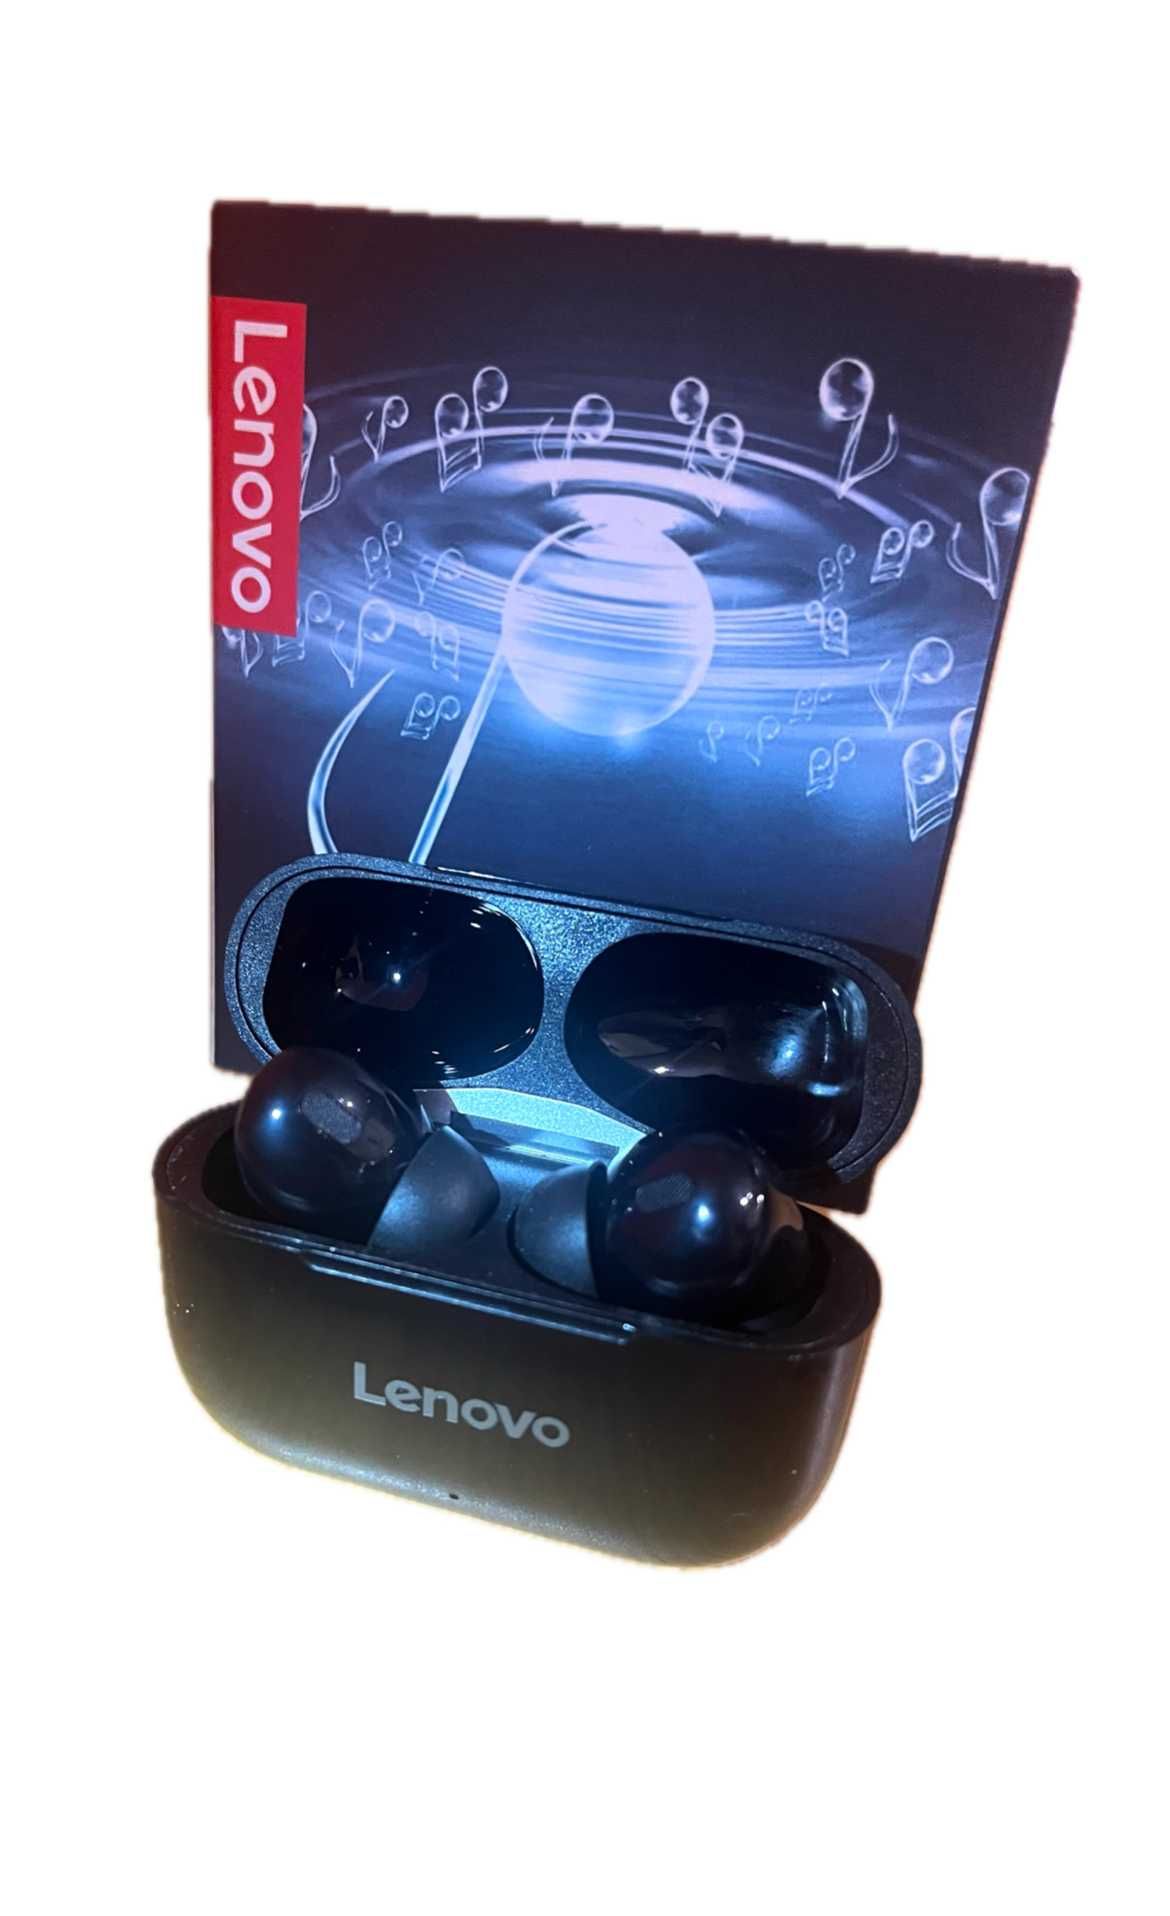 Nowe słuchawki bezprzewodowe Lenovo! Białe/Czarne